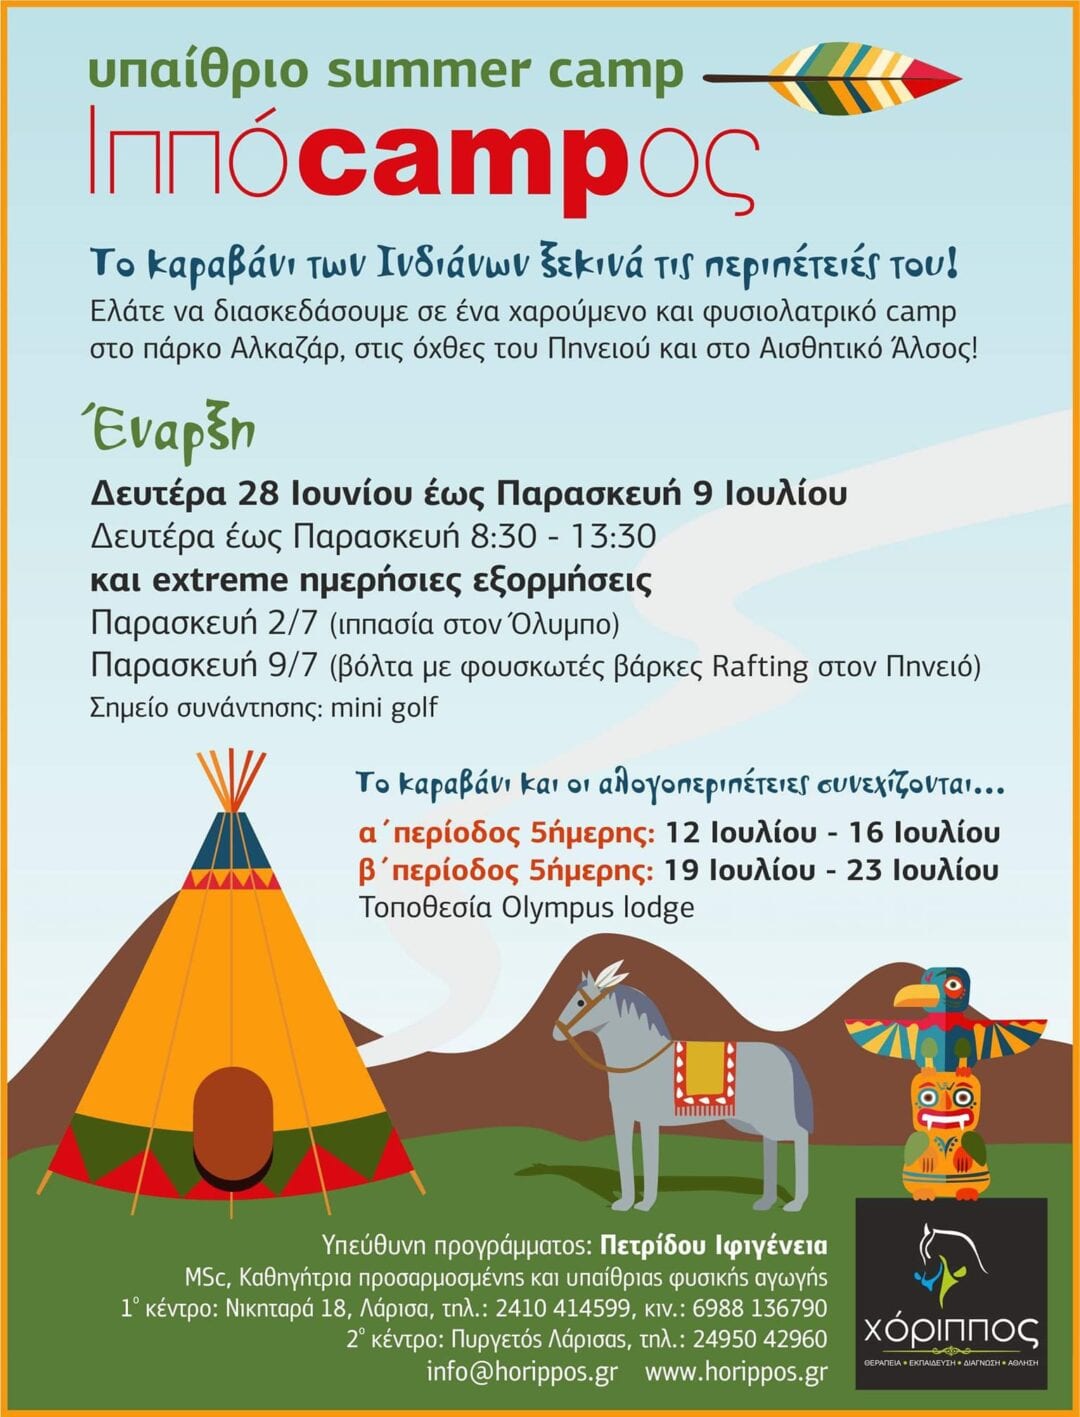 Υπαίθριο summer camp Ιππόcampος ’21